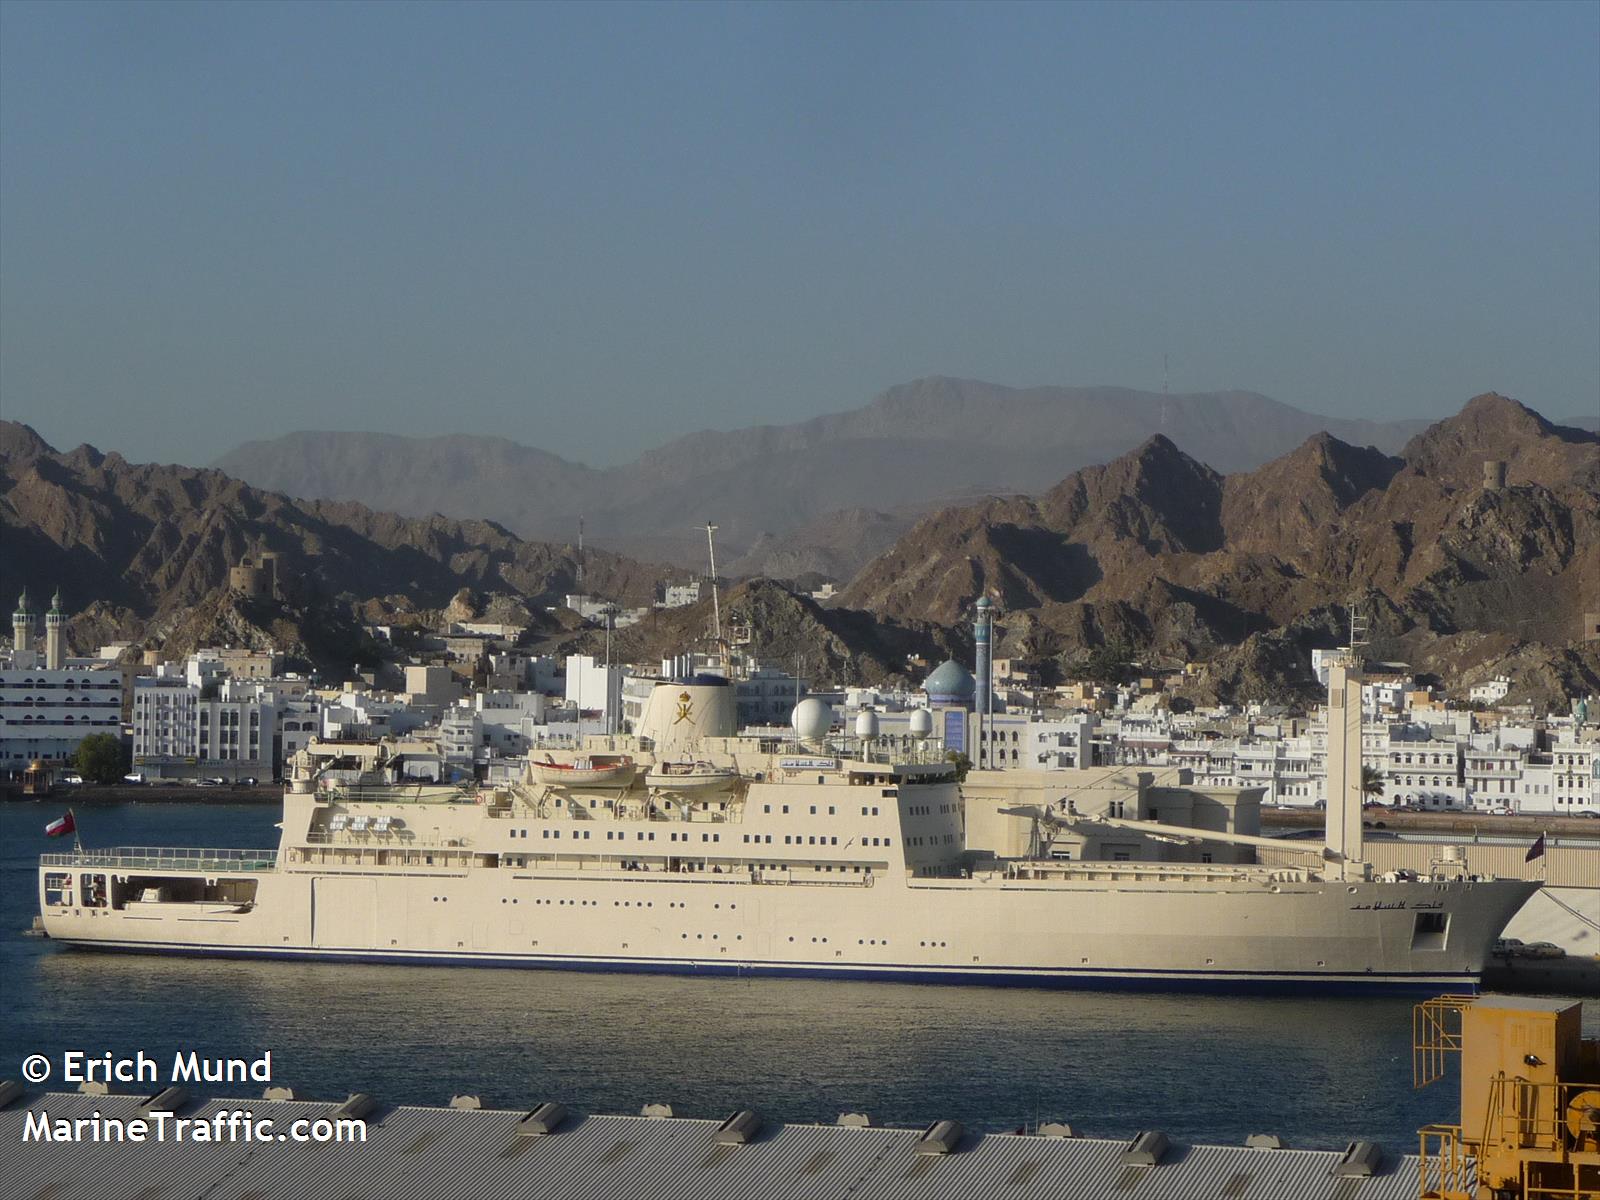  سفن إنزال للمغرب و دول عربية أخرى  - صفحة 2 Showphoto